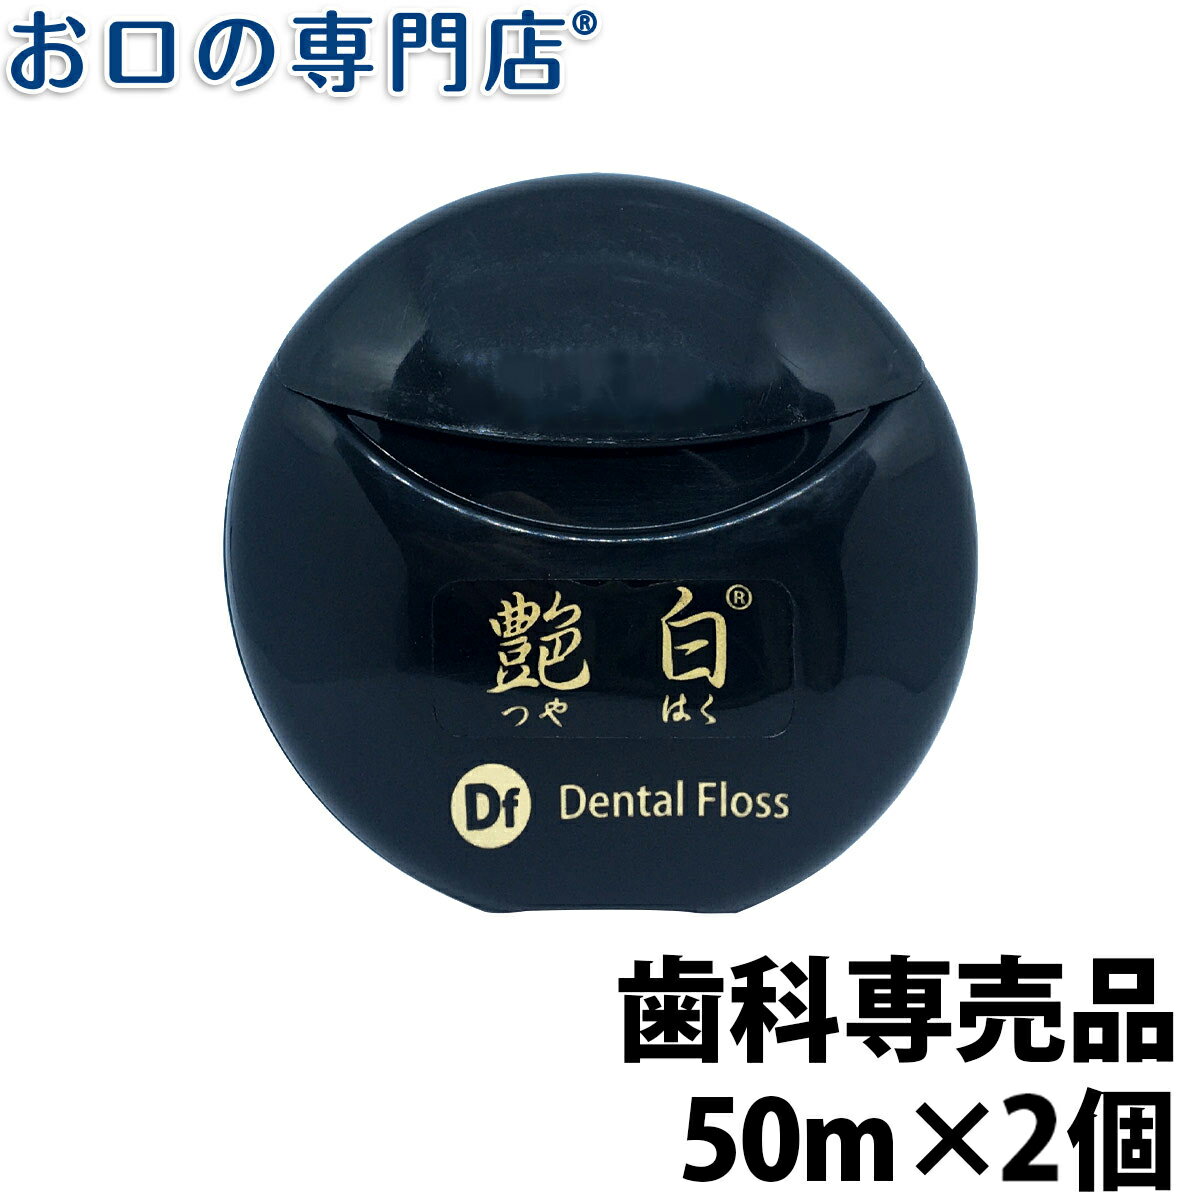 【送料無料】艶白(つやはく) Df デンタルフロス 50m 抗菌ケース付き 2個 歯科専売品